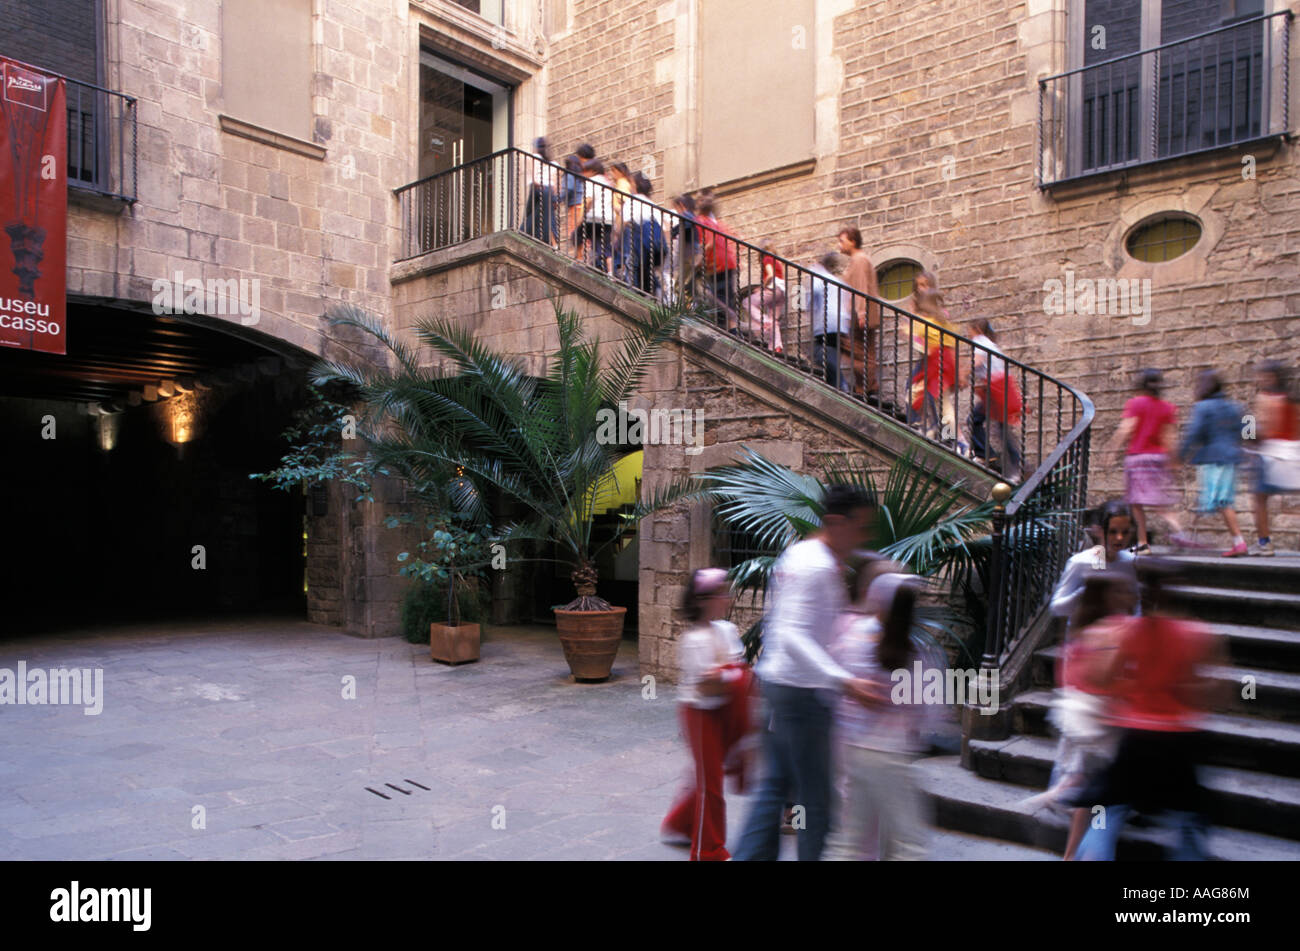 Groupe d'écoliers visitant Museu Picasso Barri Gotic Vieille Ville Barcelona La Catalogne Espagne Banque D'Images